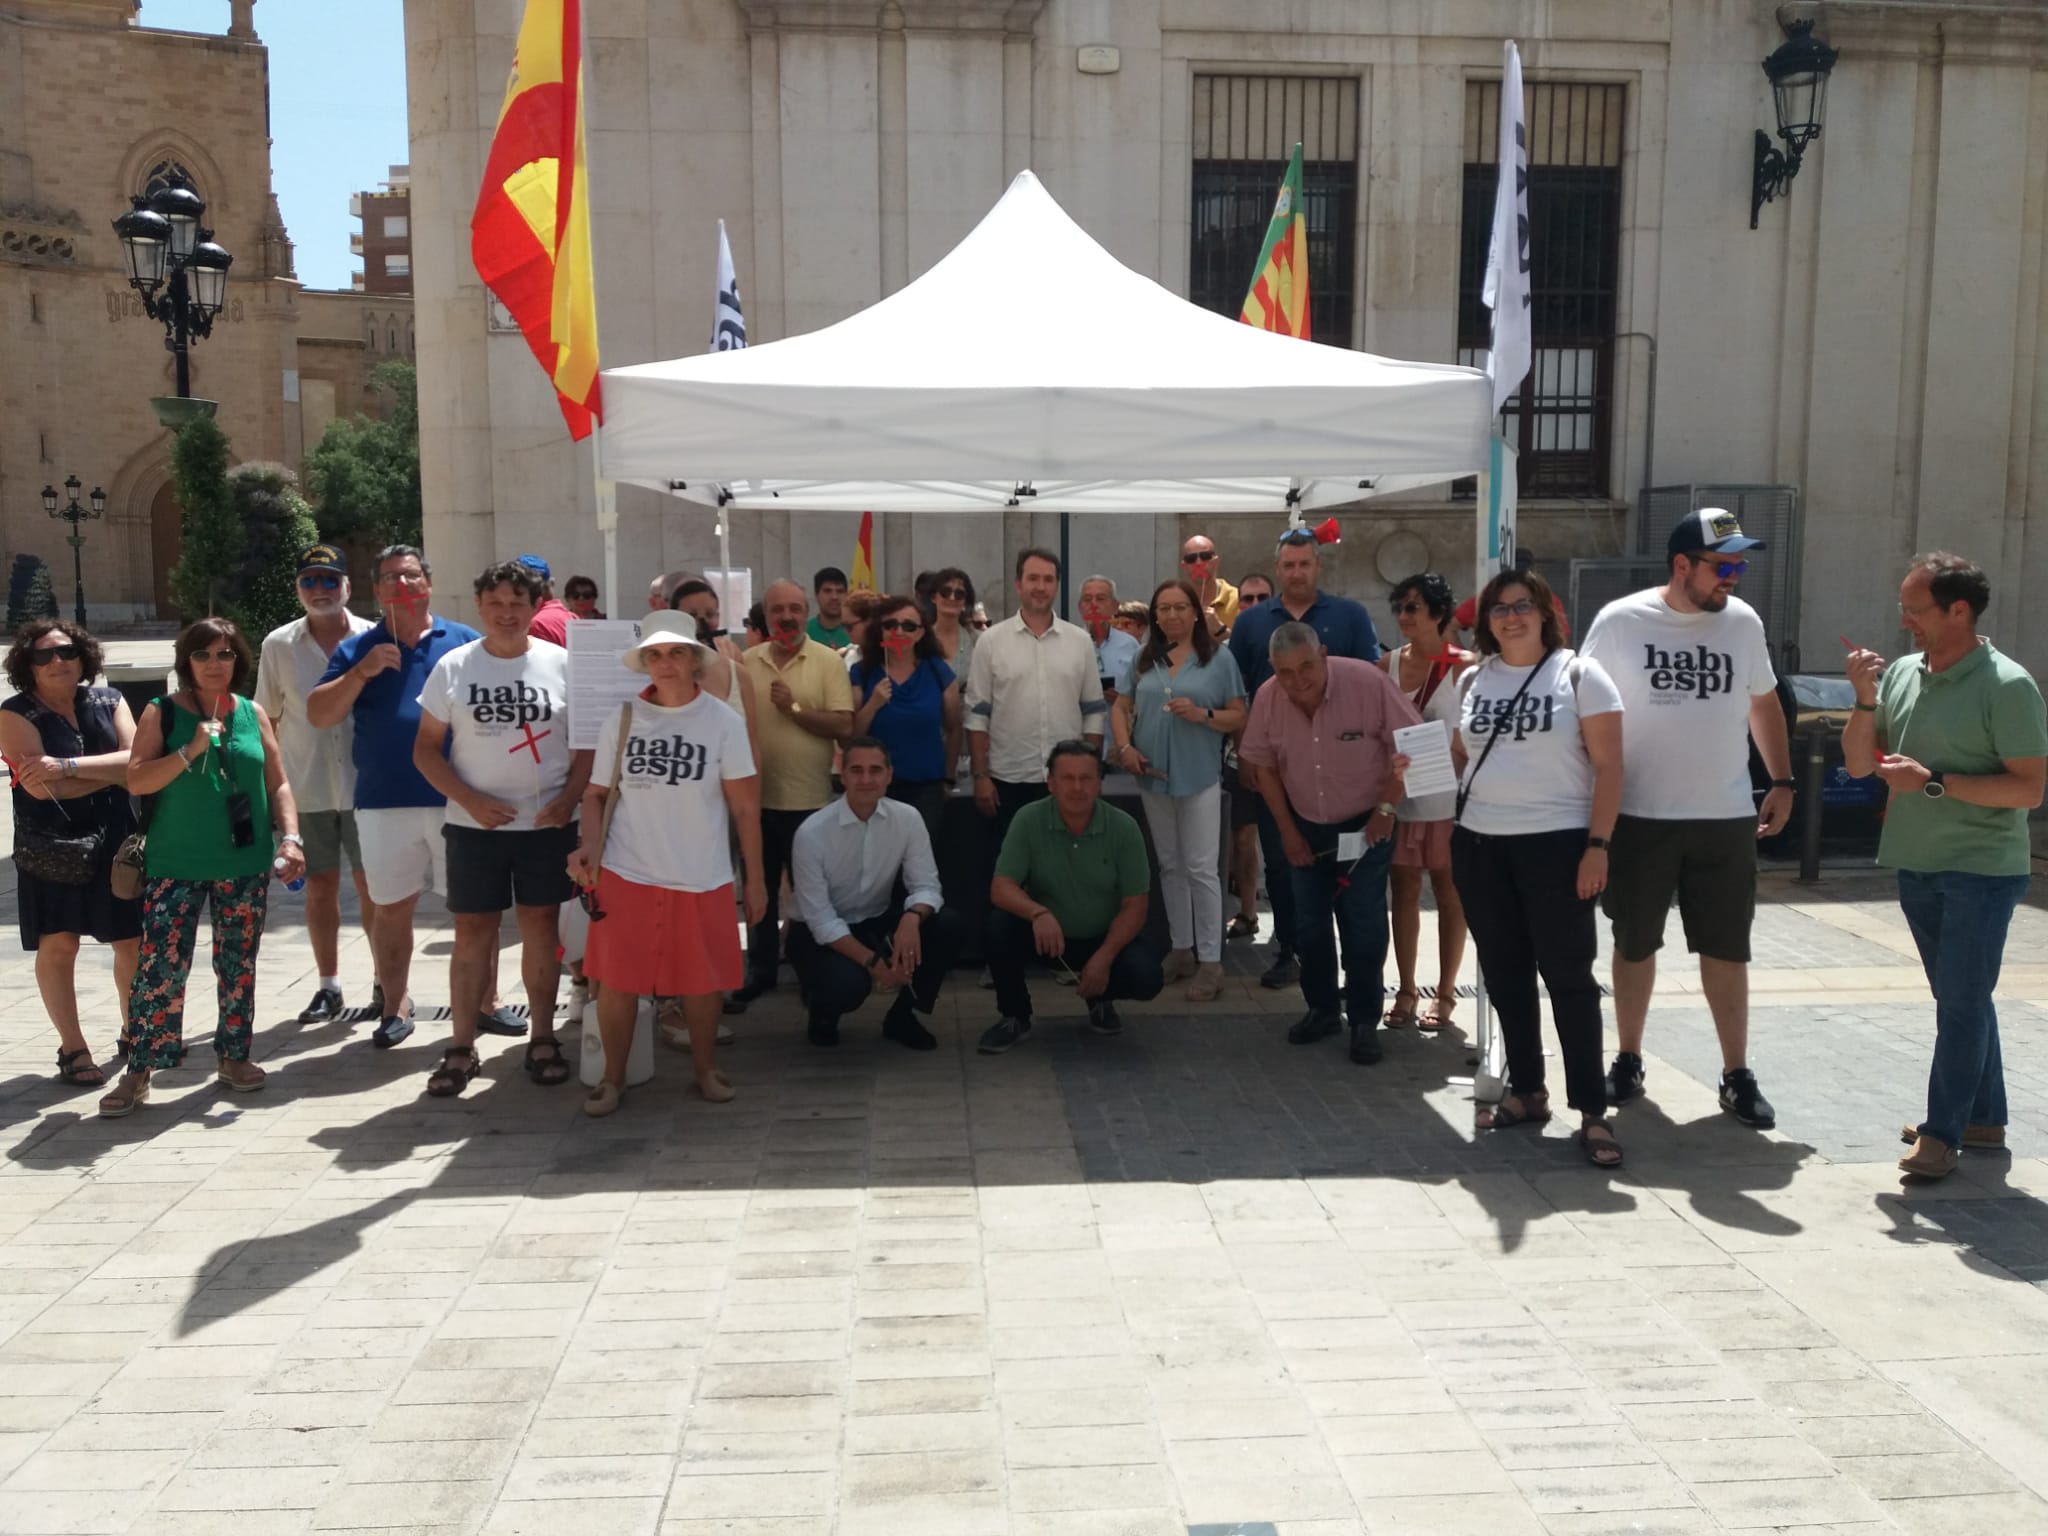 Solo VOX apoya y participa en la concentración de ‘Hablamos Español’ en Castellón